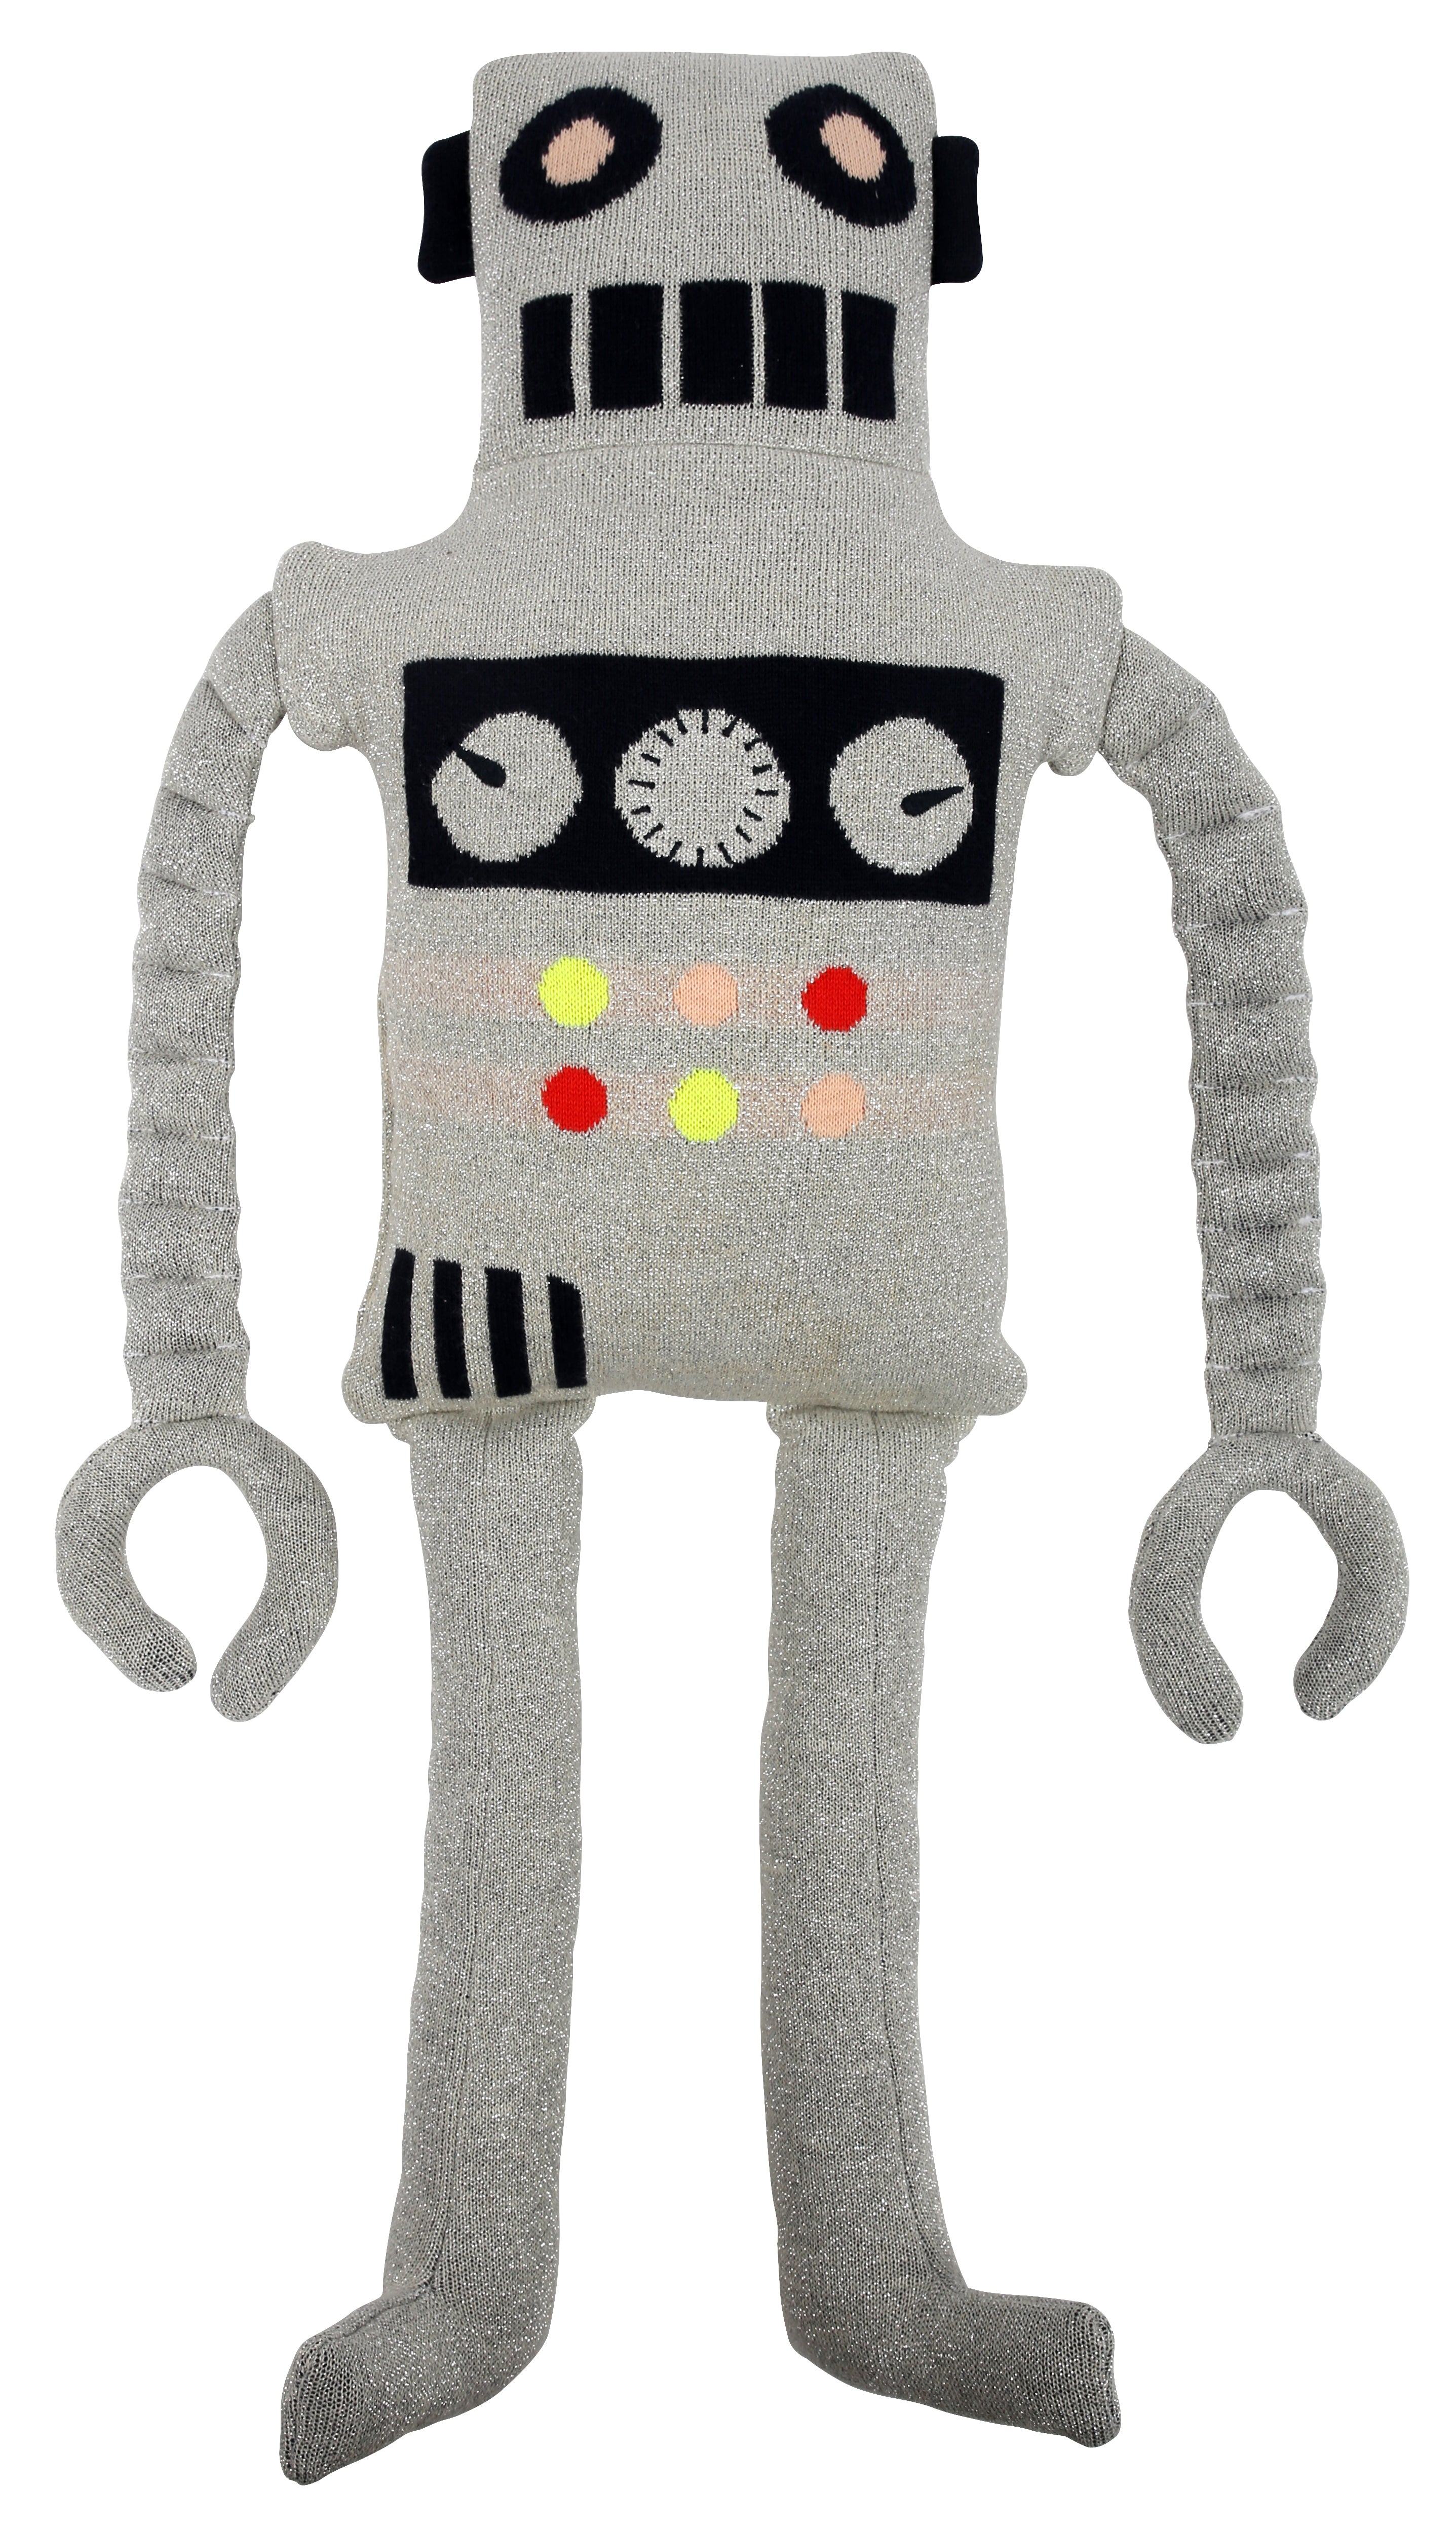 Ziggy Robot Toy